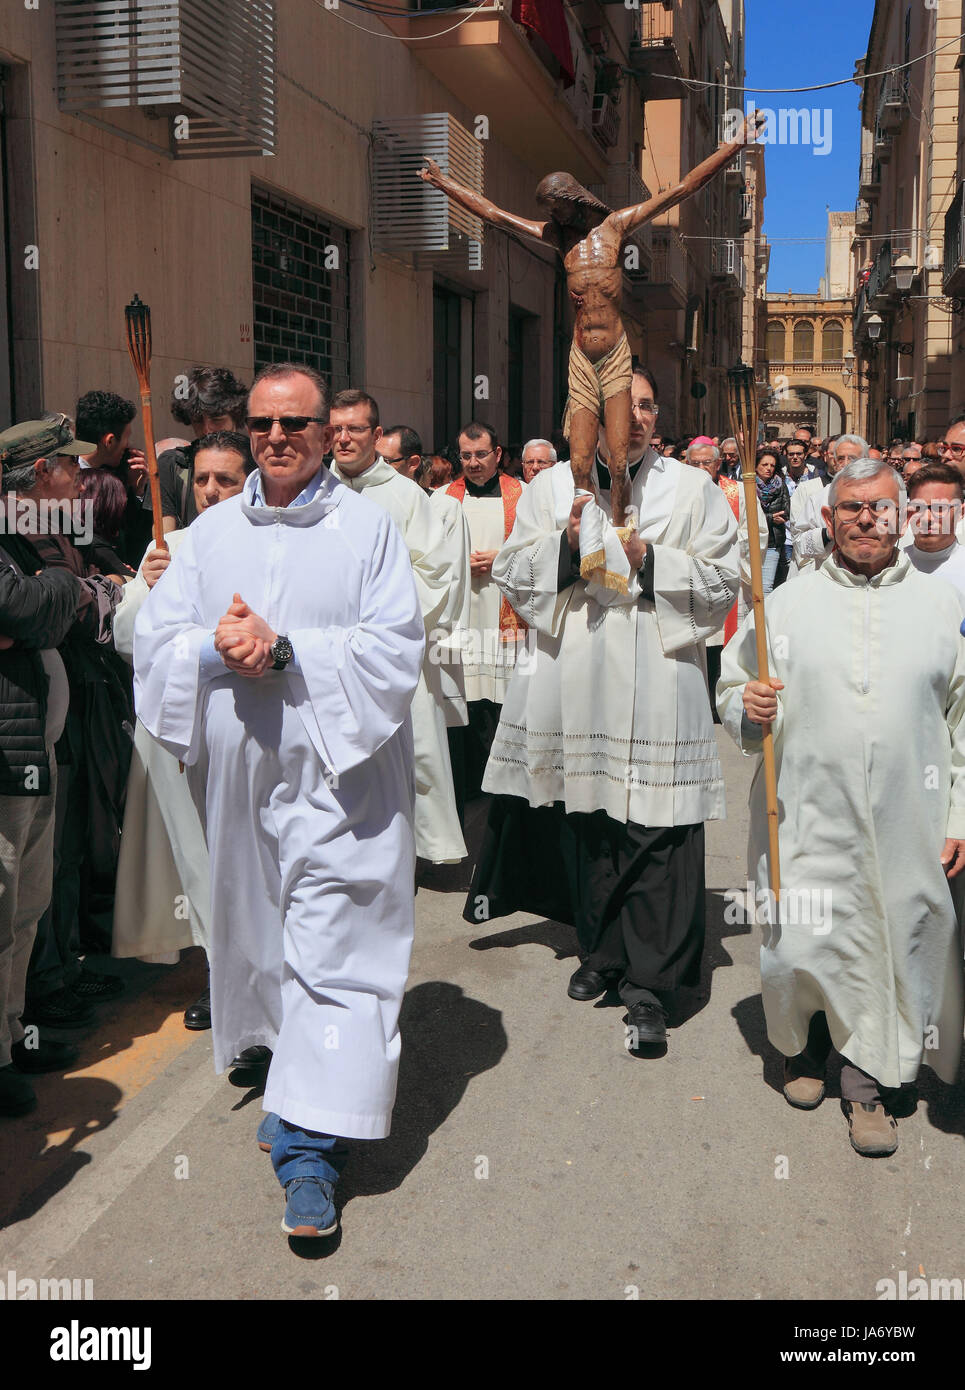 Sizilien, in der Altstadt von Trapani, Gruppen und Menschen, die während der Prozession am Karfreitag Geheimnis la processione dei Misteri, Ostern, Prozession Stockfoto